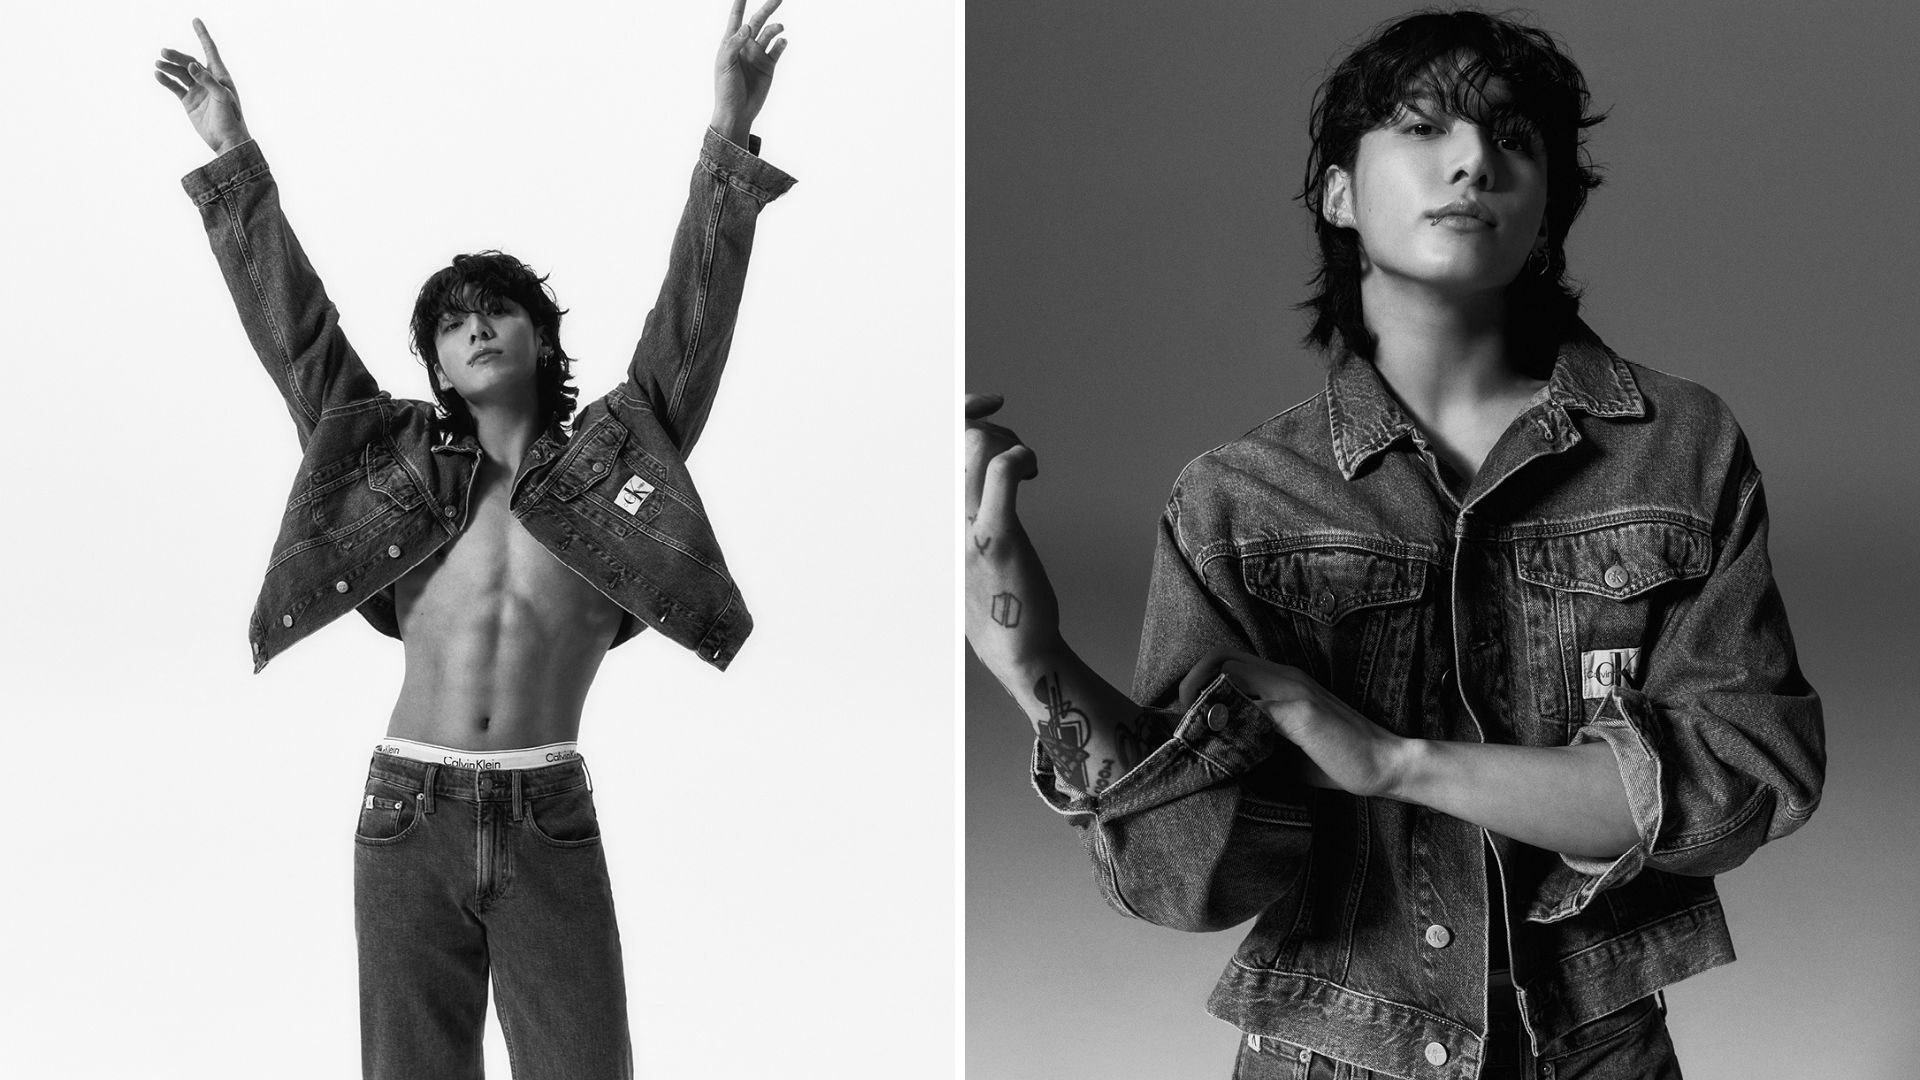 FOTOS: Jungkook saca su lado más atrevido como embajador de ropa interior y jeans de Calvin Klein